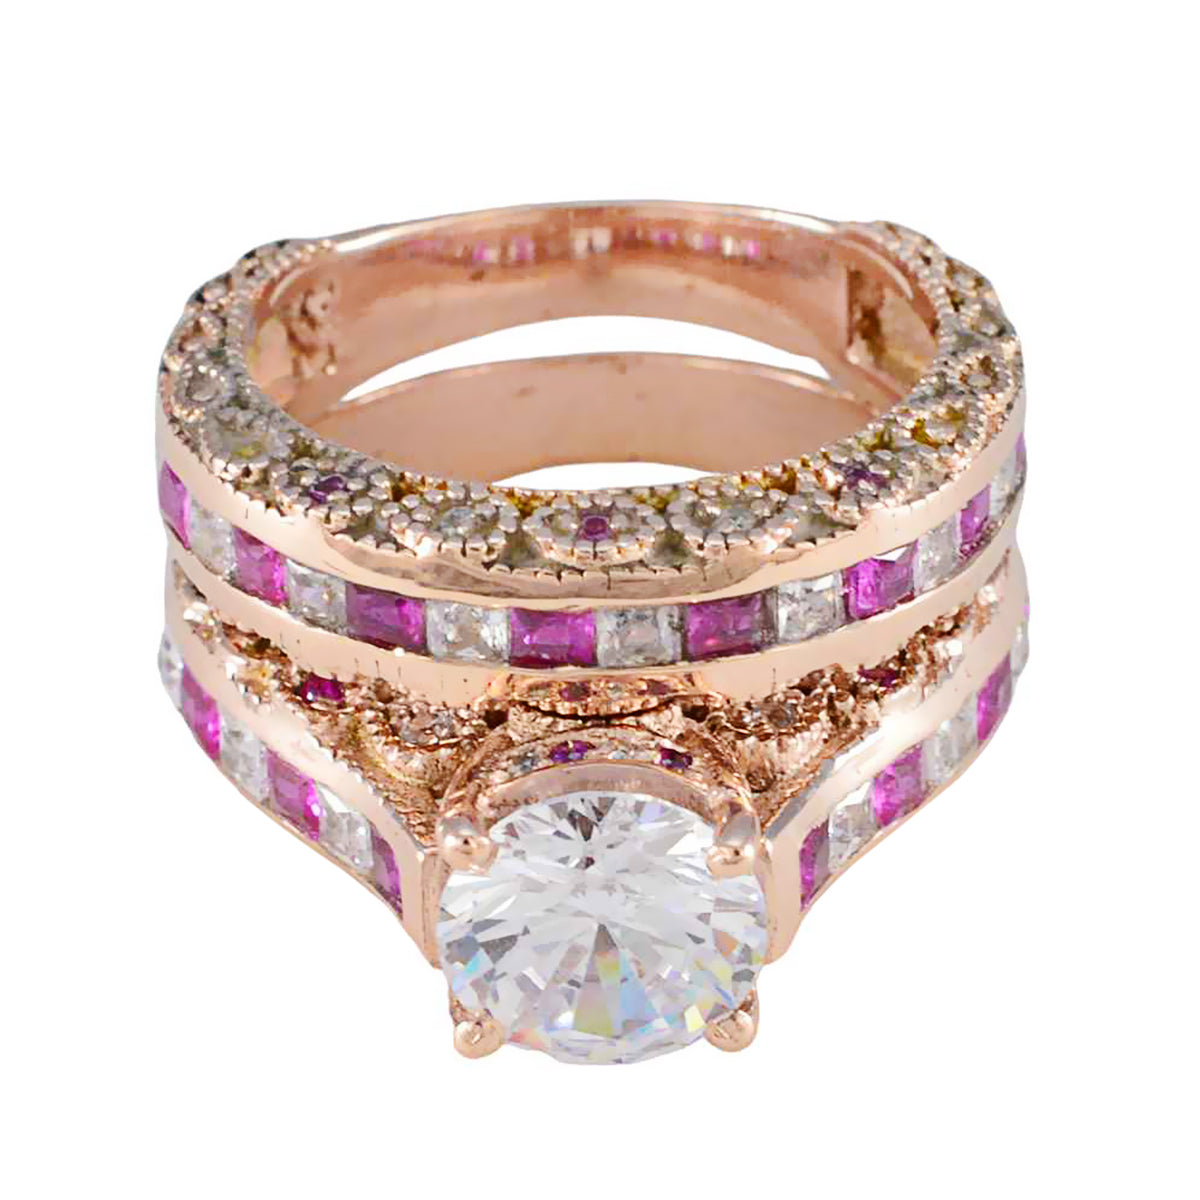 anello riyo in argento con placcatura in oro rosa, rubino, pietra cz, forma rotonda, montatura a punta, anello di compleanno con gioielli personalizzati